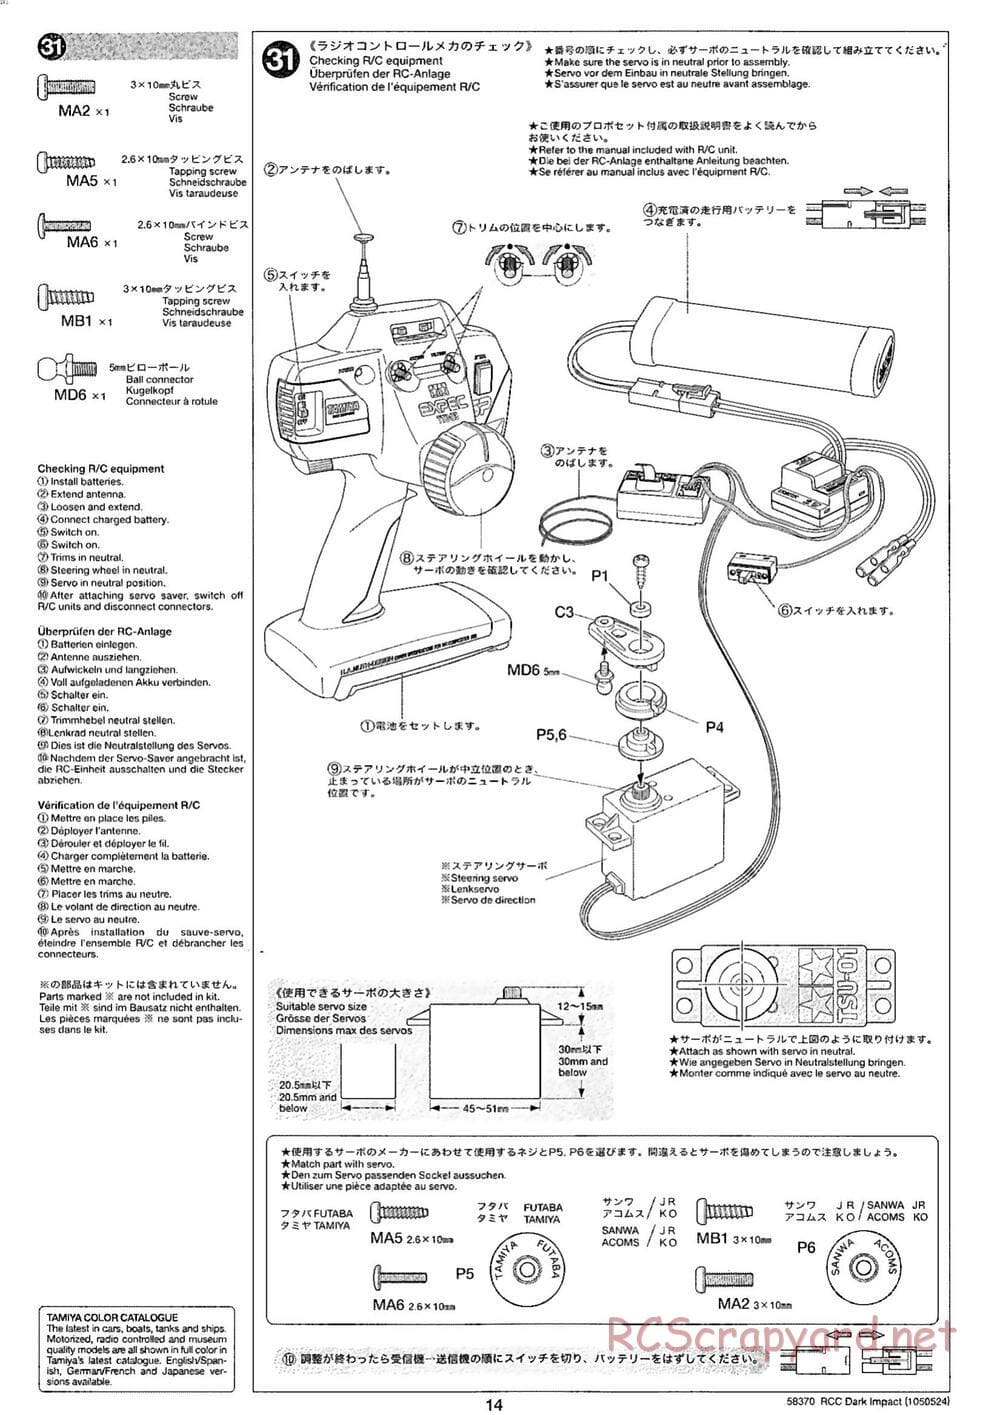 Tamiya - Dark Impact Chassis - Manual - Page 14